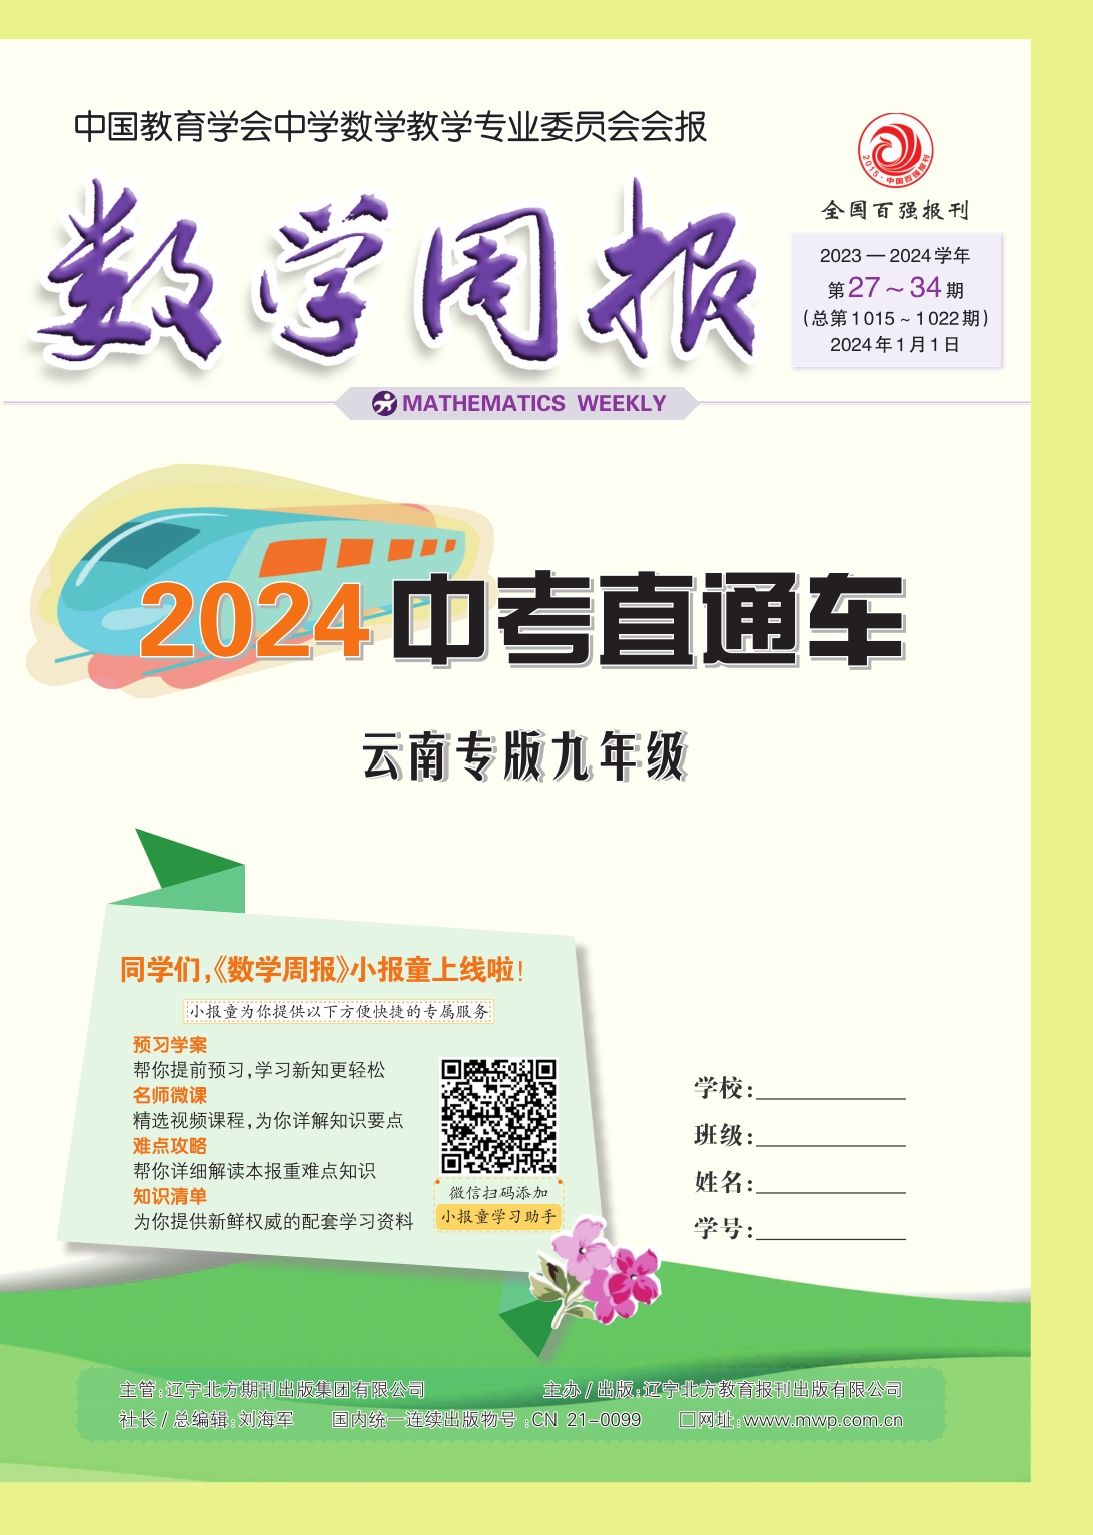 《数学周报》2024云南中考直通车